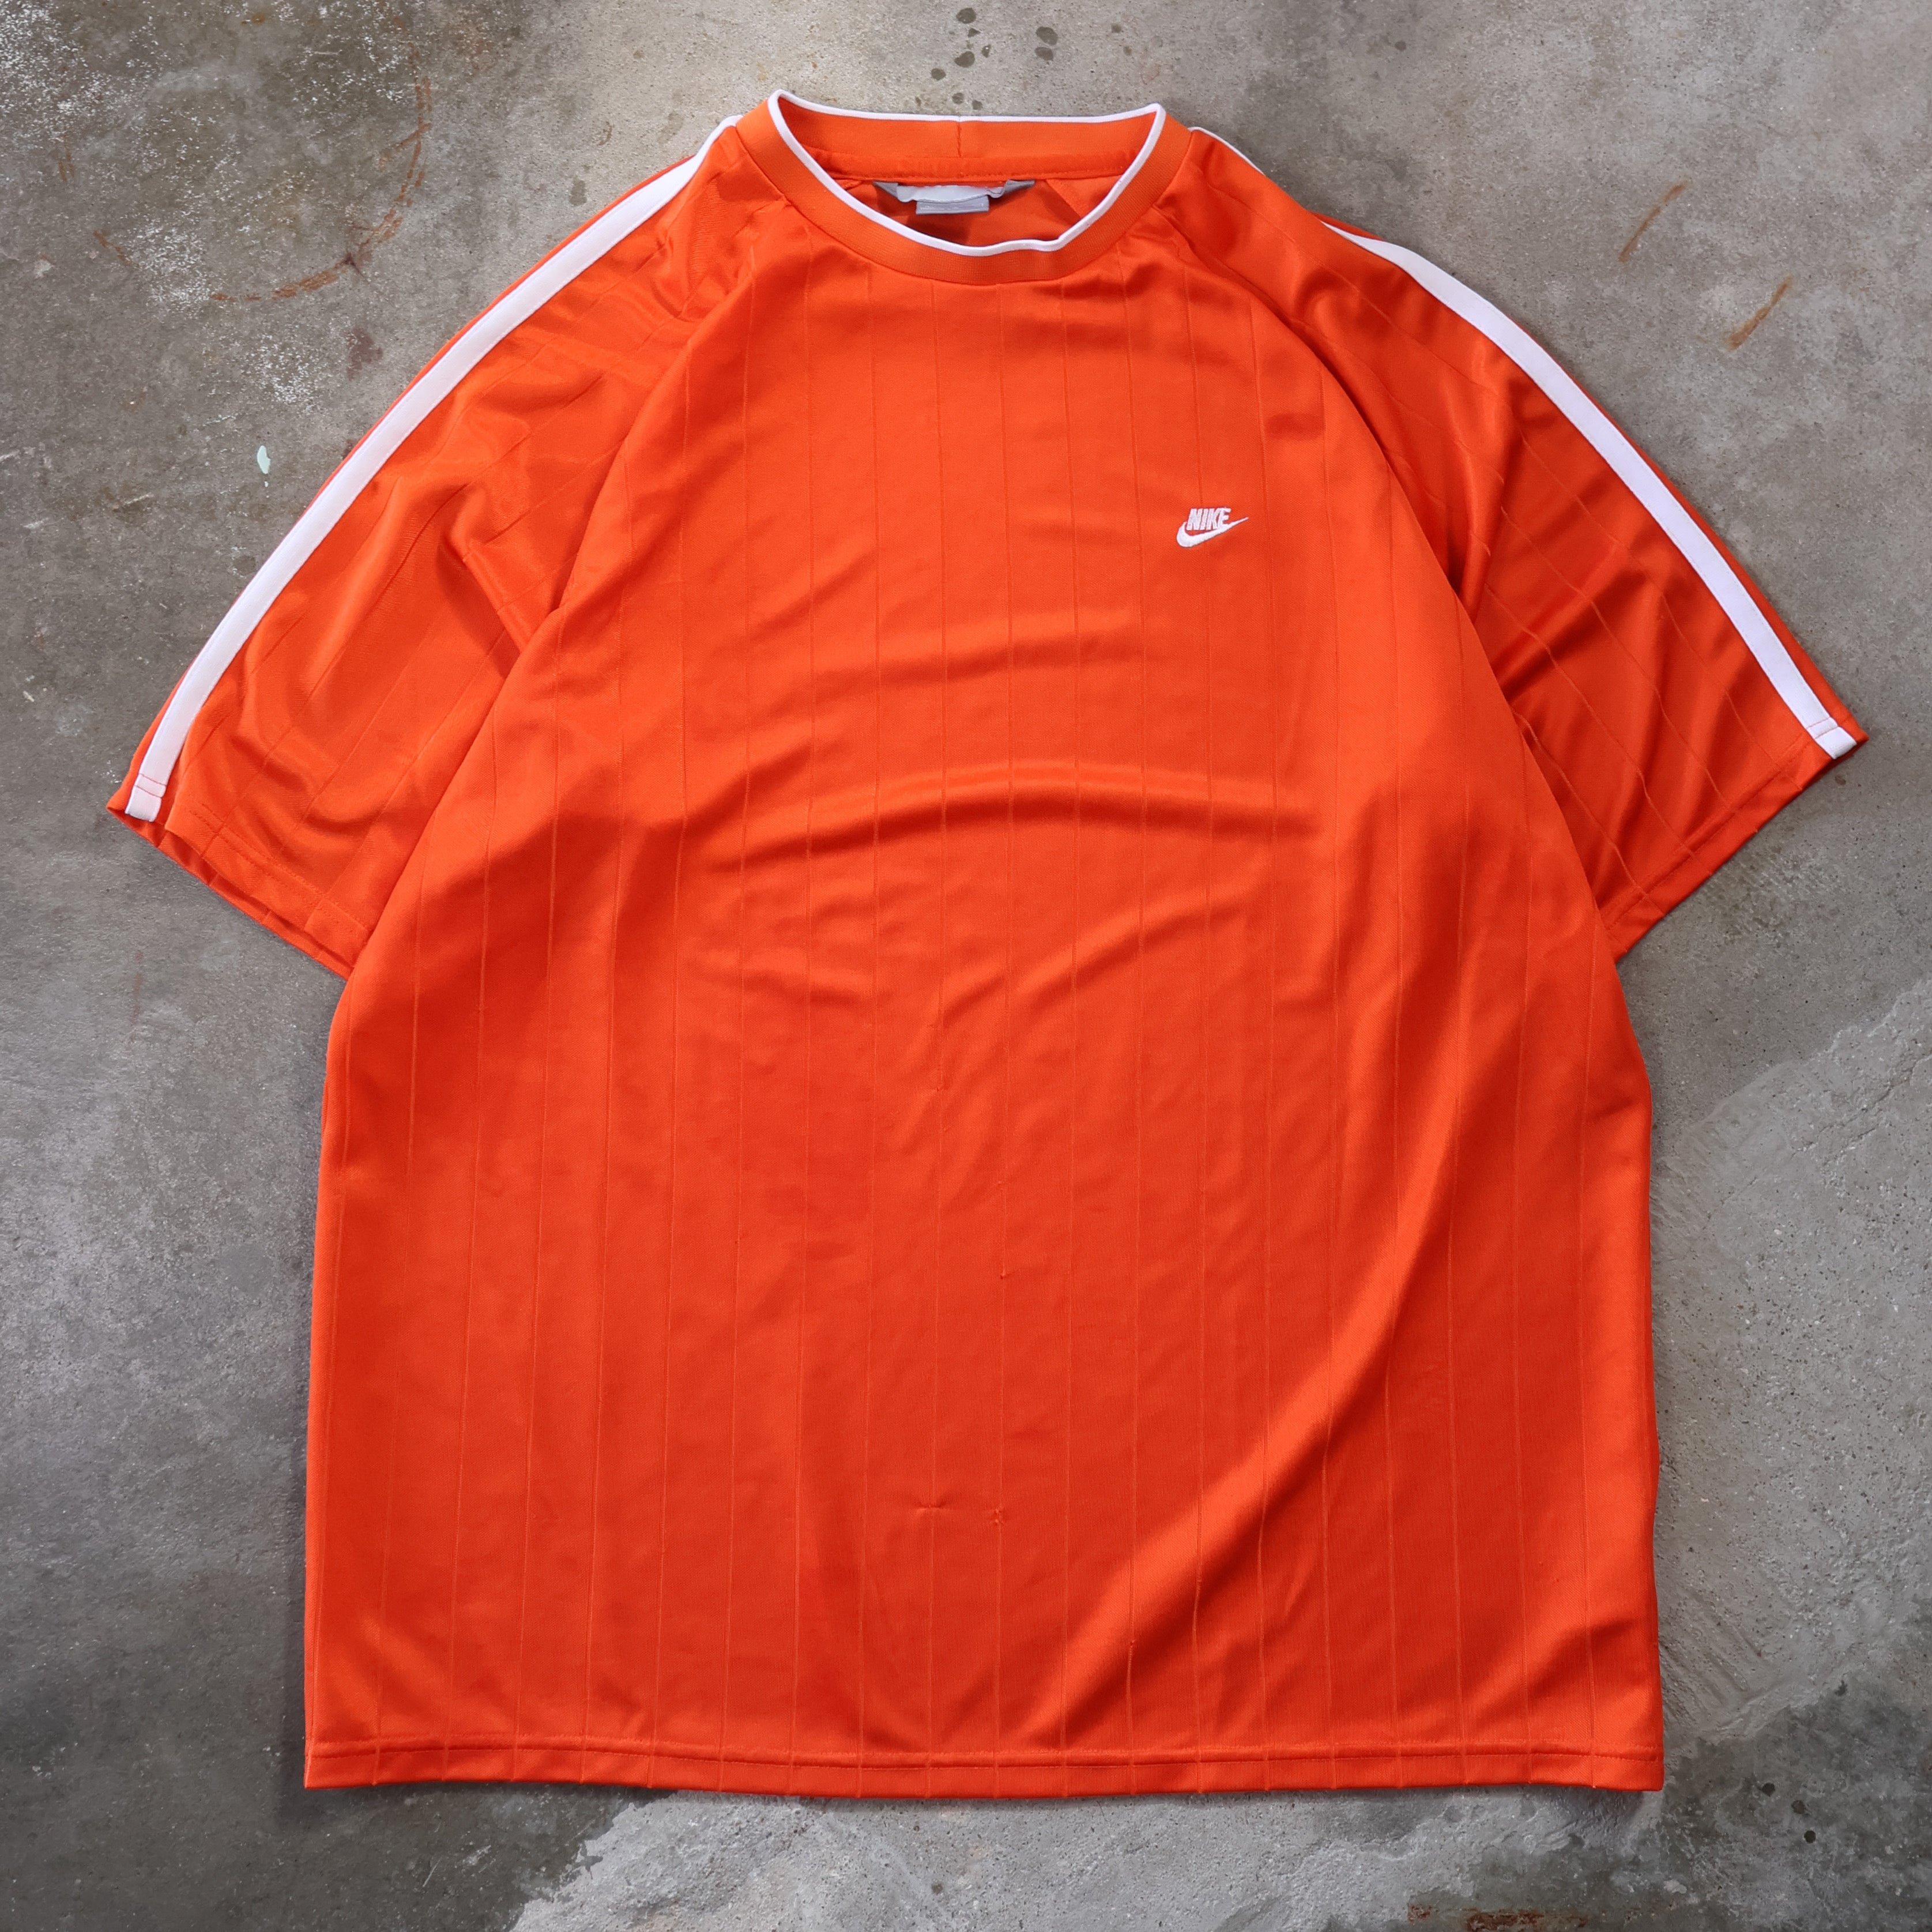 Orange Nike Jersey T-Shirt 00s (XL)